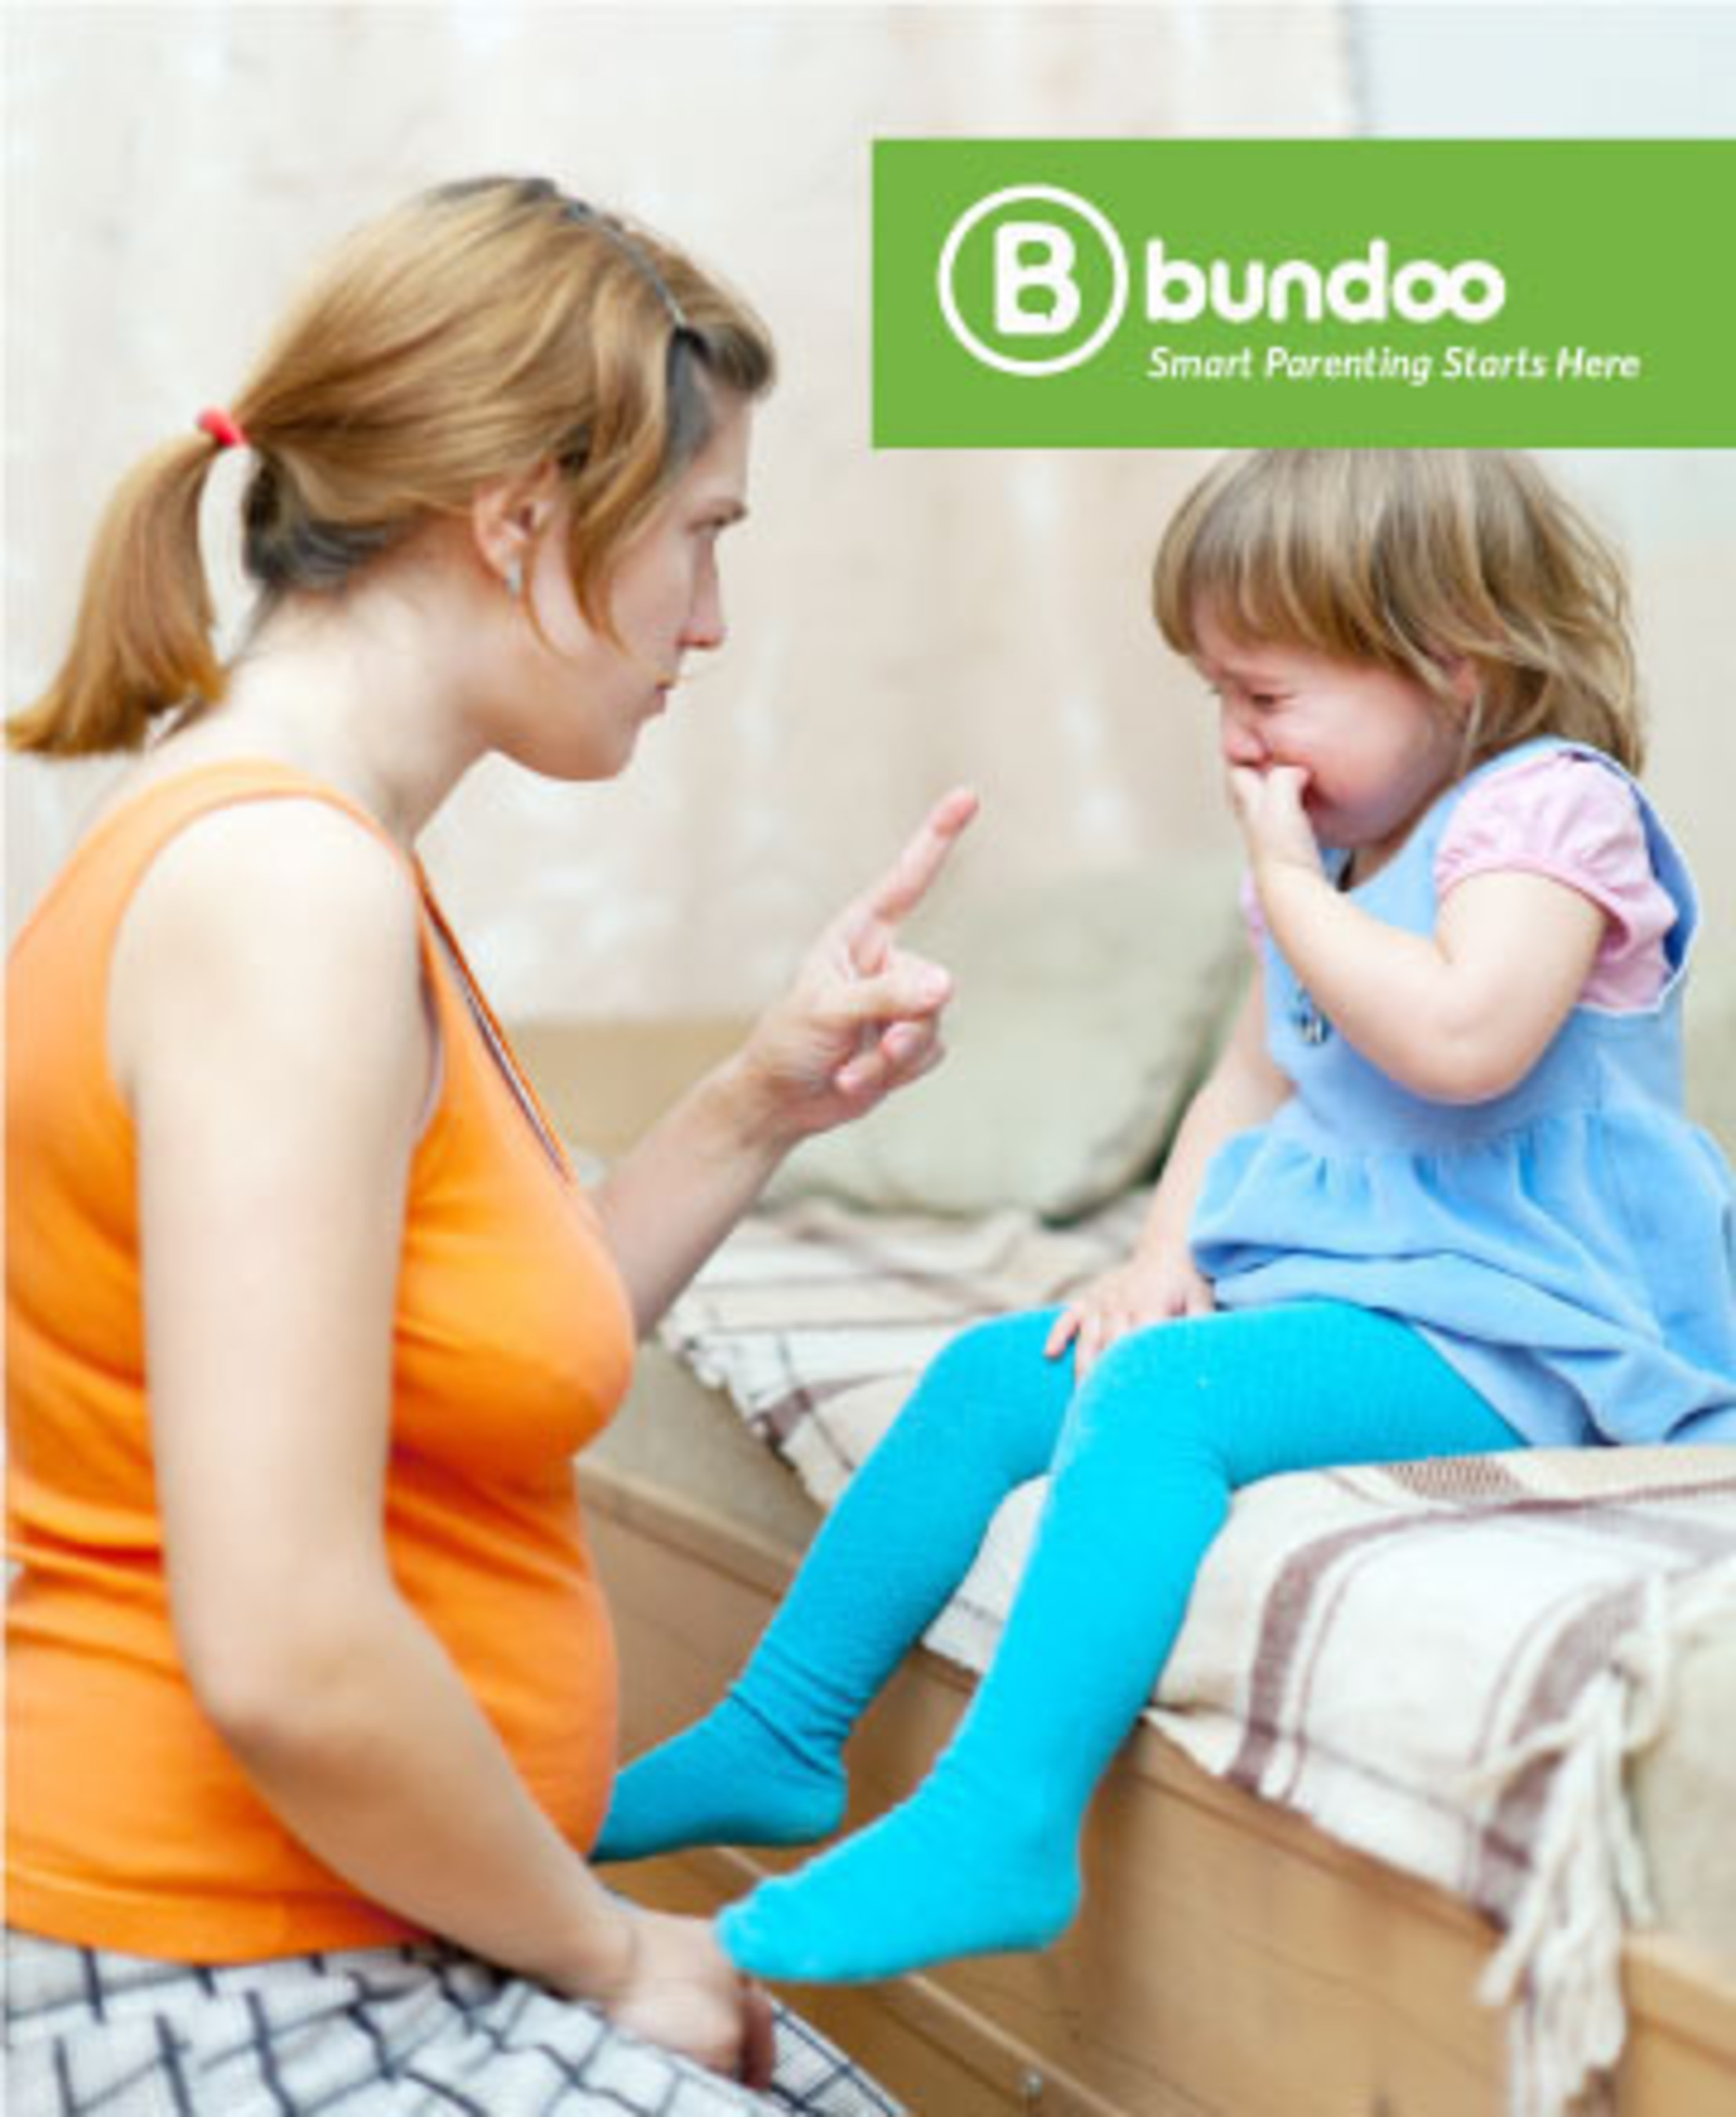 Are You a Bad Parent?. (PRNewsFoto/Bundoo) (PRNewsFoto/BUNDOO)